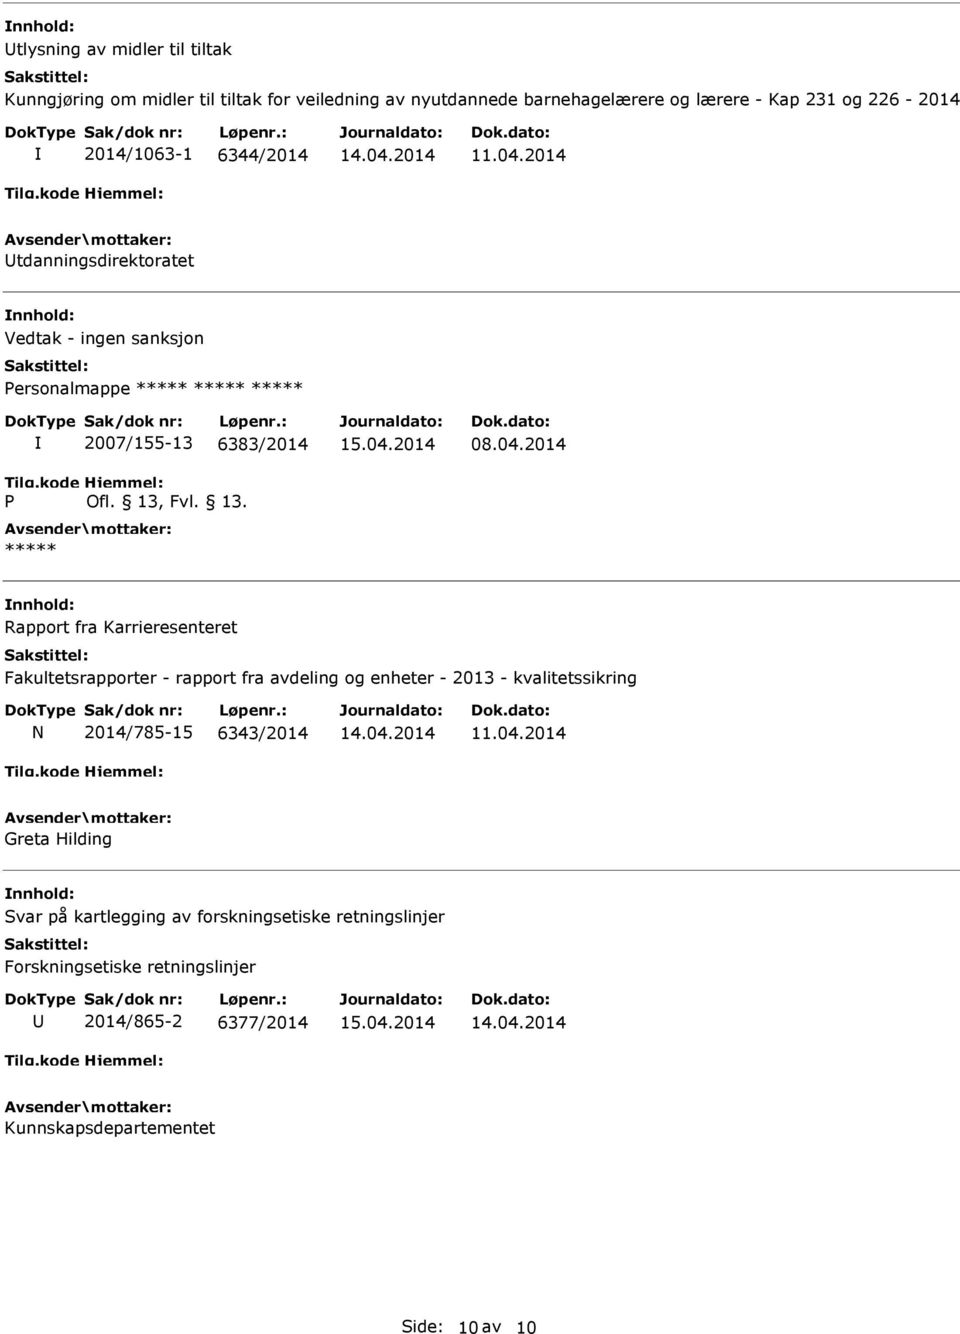 2014 nnhold: Rapport fra Karrieresenteret Fakultetsrapporter - rapport fra avdeling og enheter - 2013 - kvalitetssikring N 2014/785-15 6343/2014